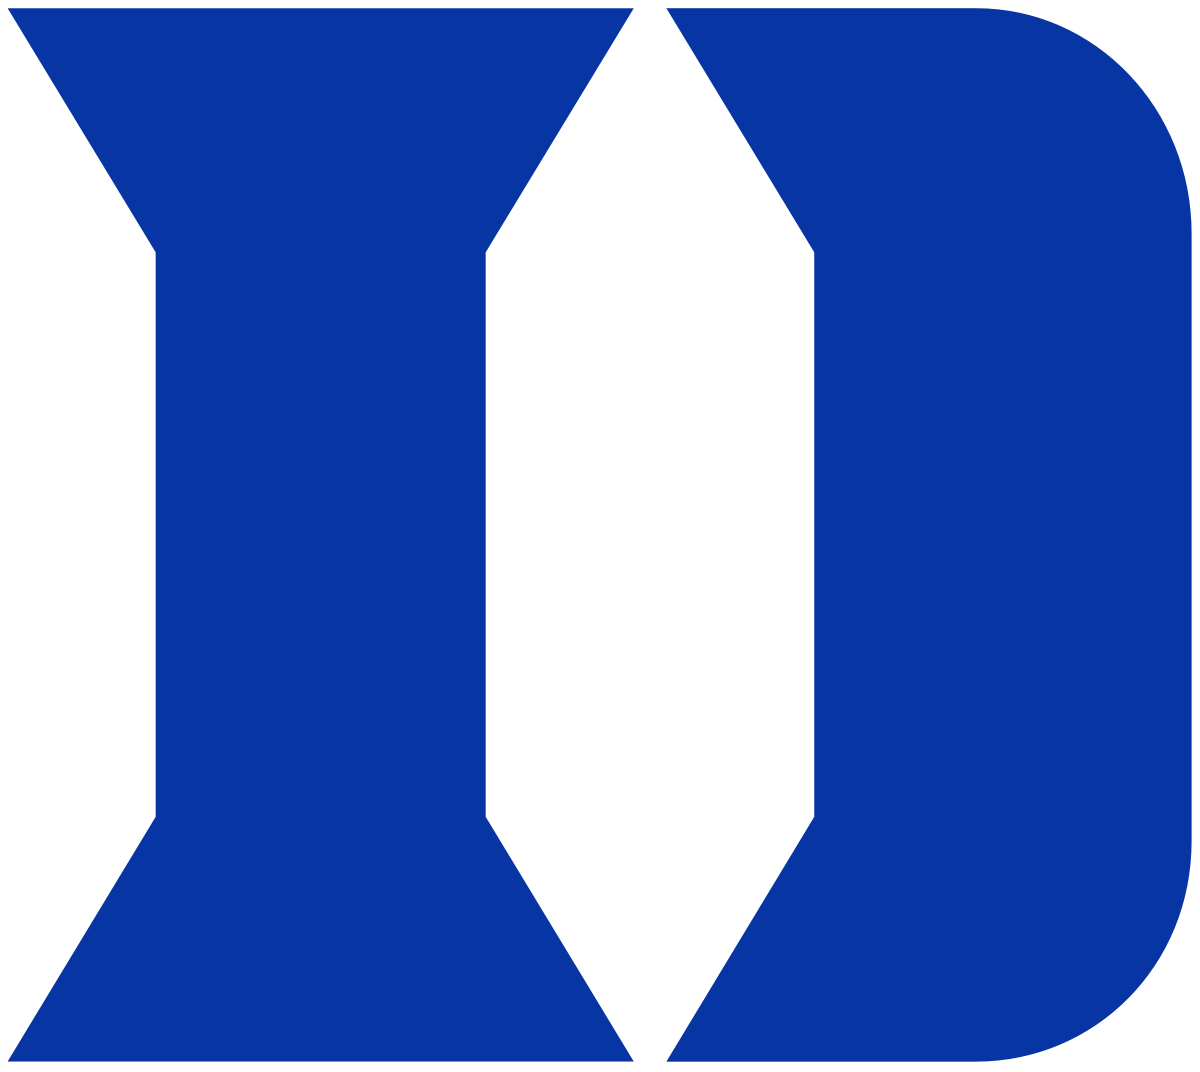 Blue Devils Baseball Logo - Duke Blue Devils baseball